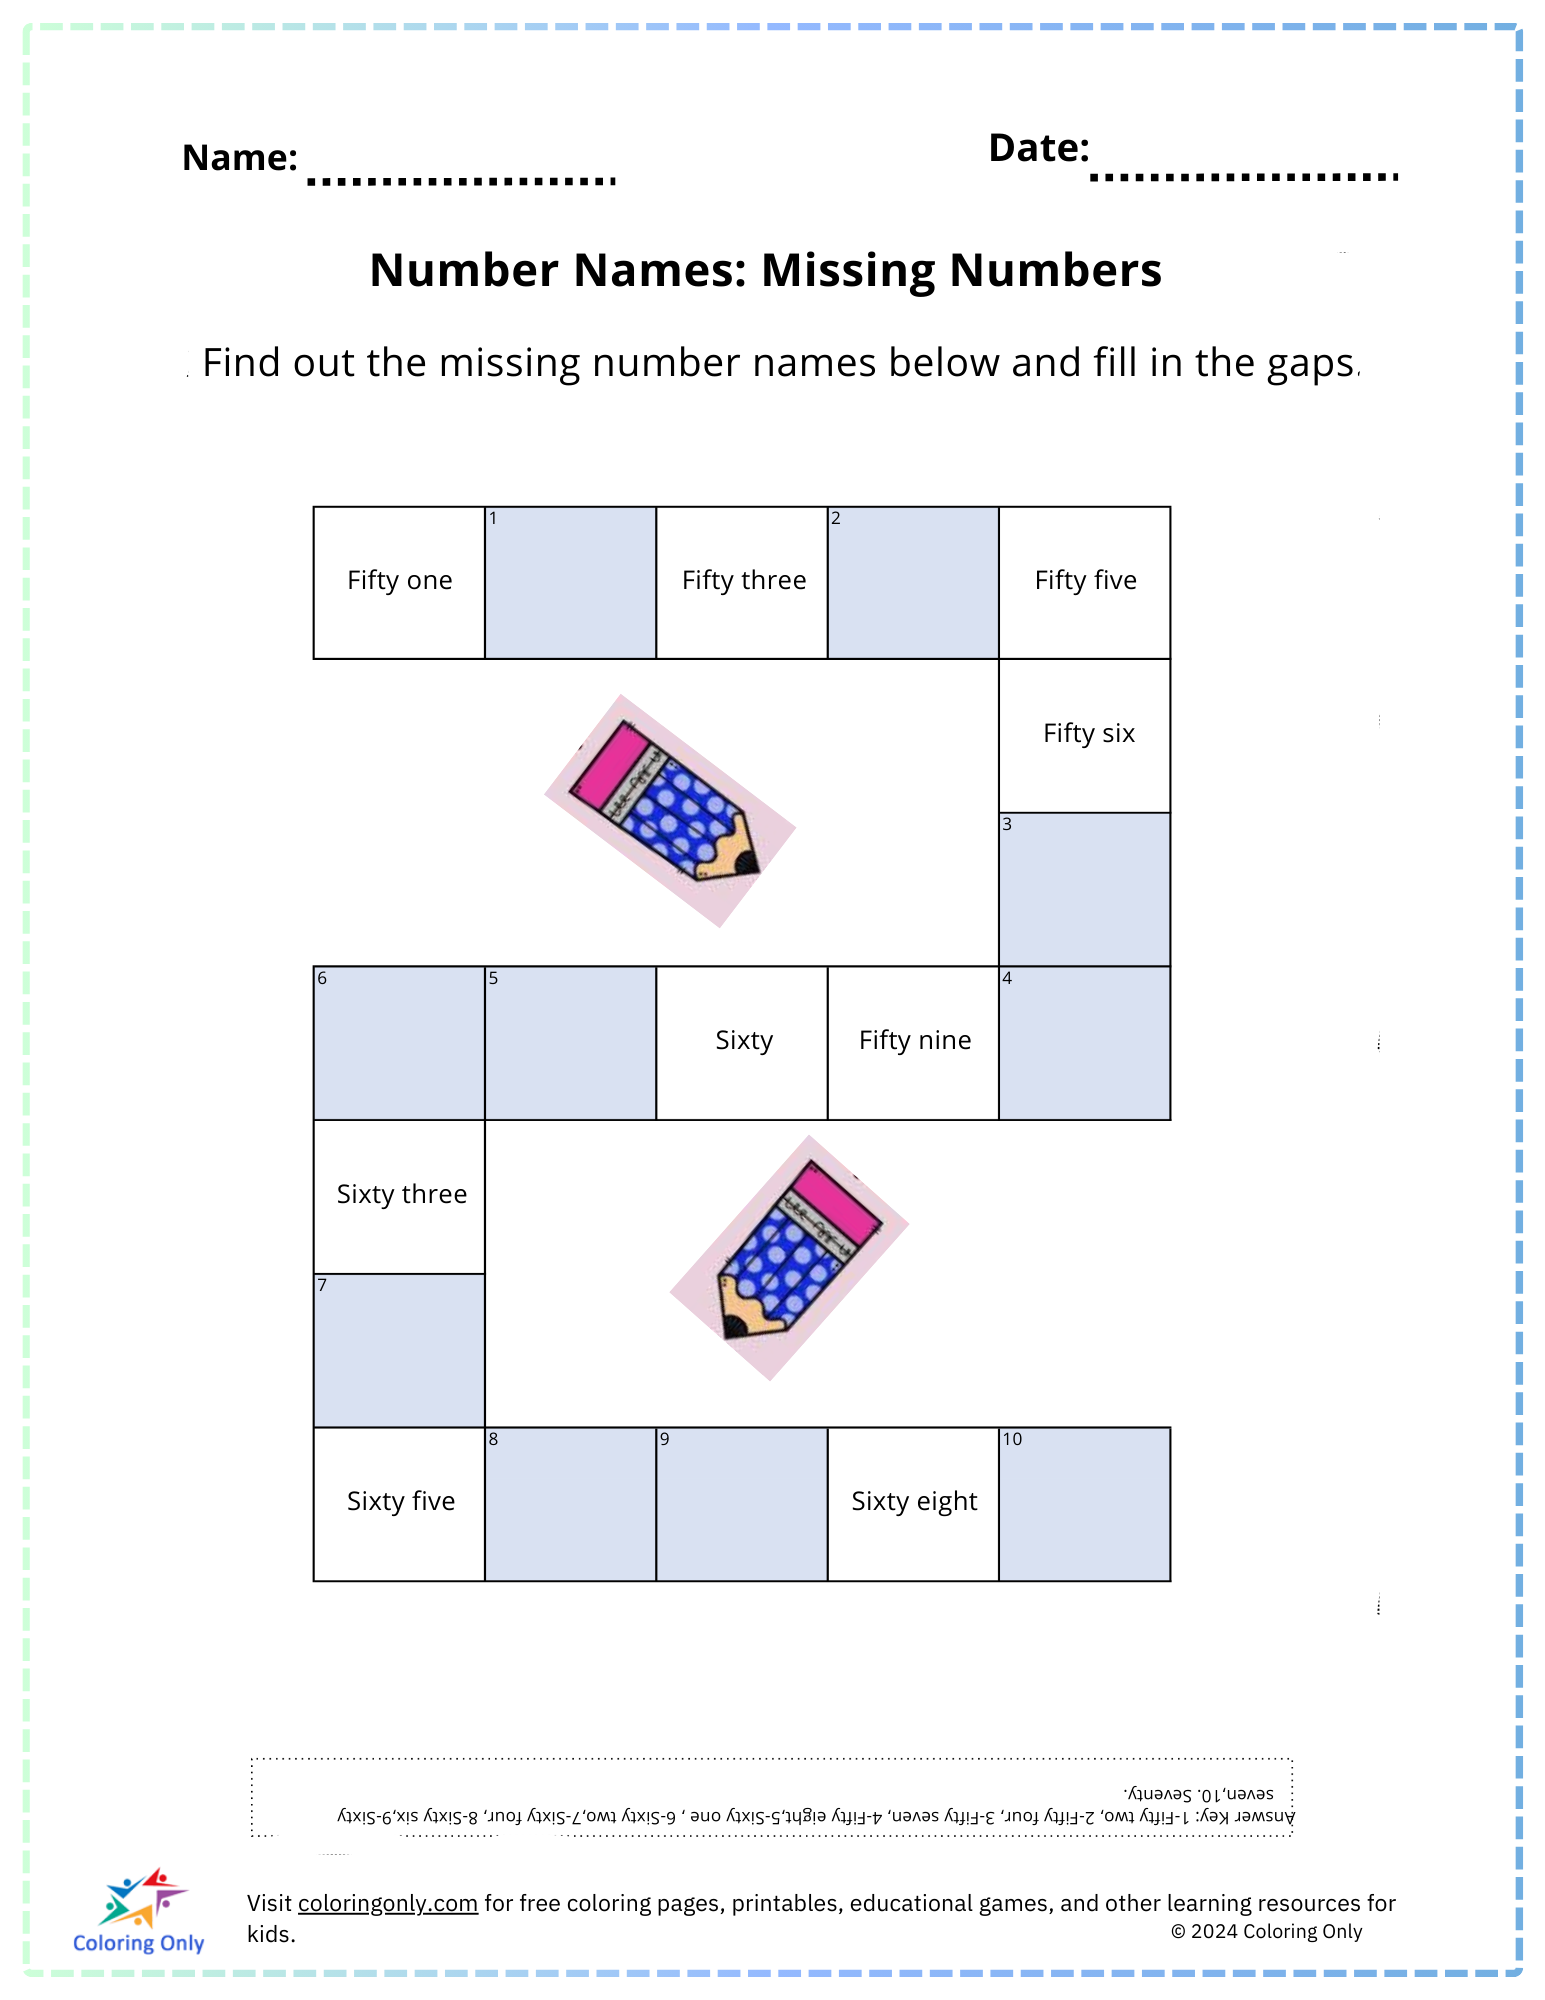 Number Names: Missing Numbers Free Printable Worksheet